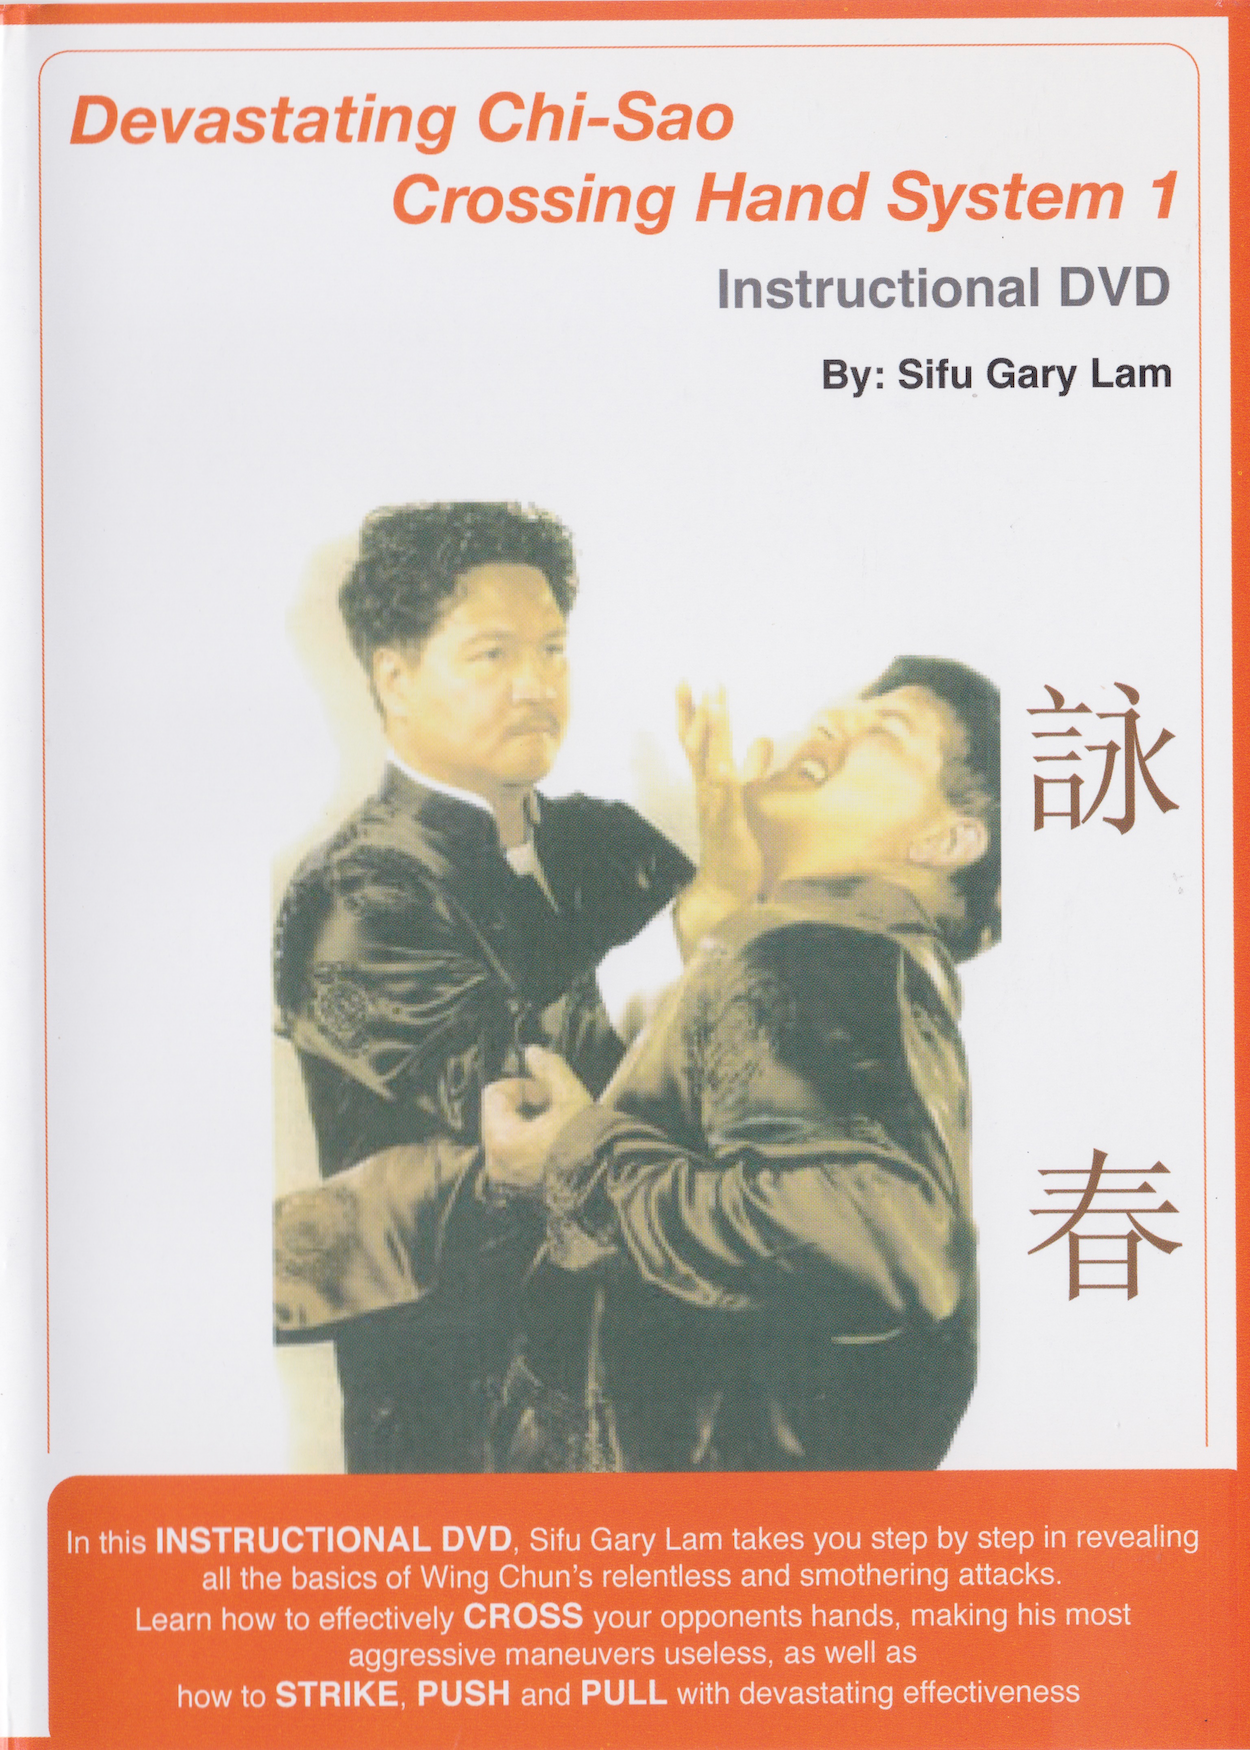 Devastador Chi Sao Crossing Hand System 1 DVD de Gary Lam